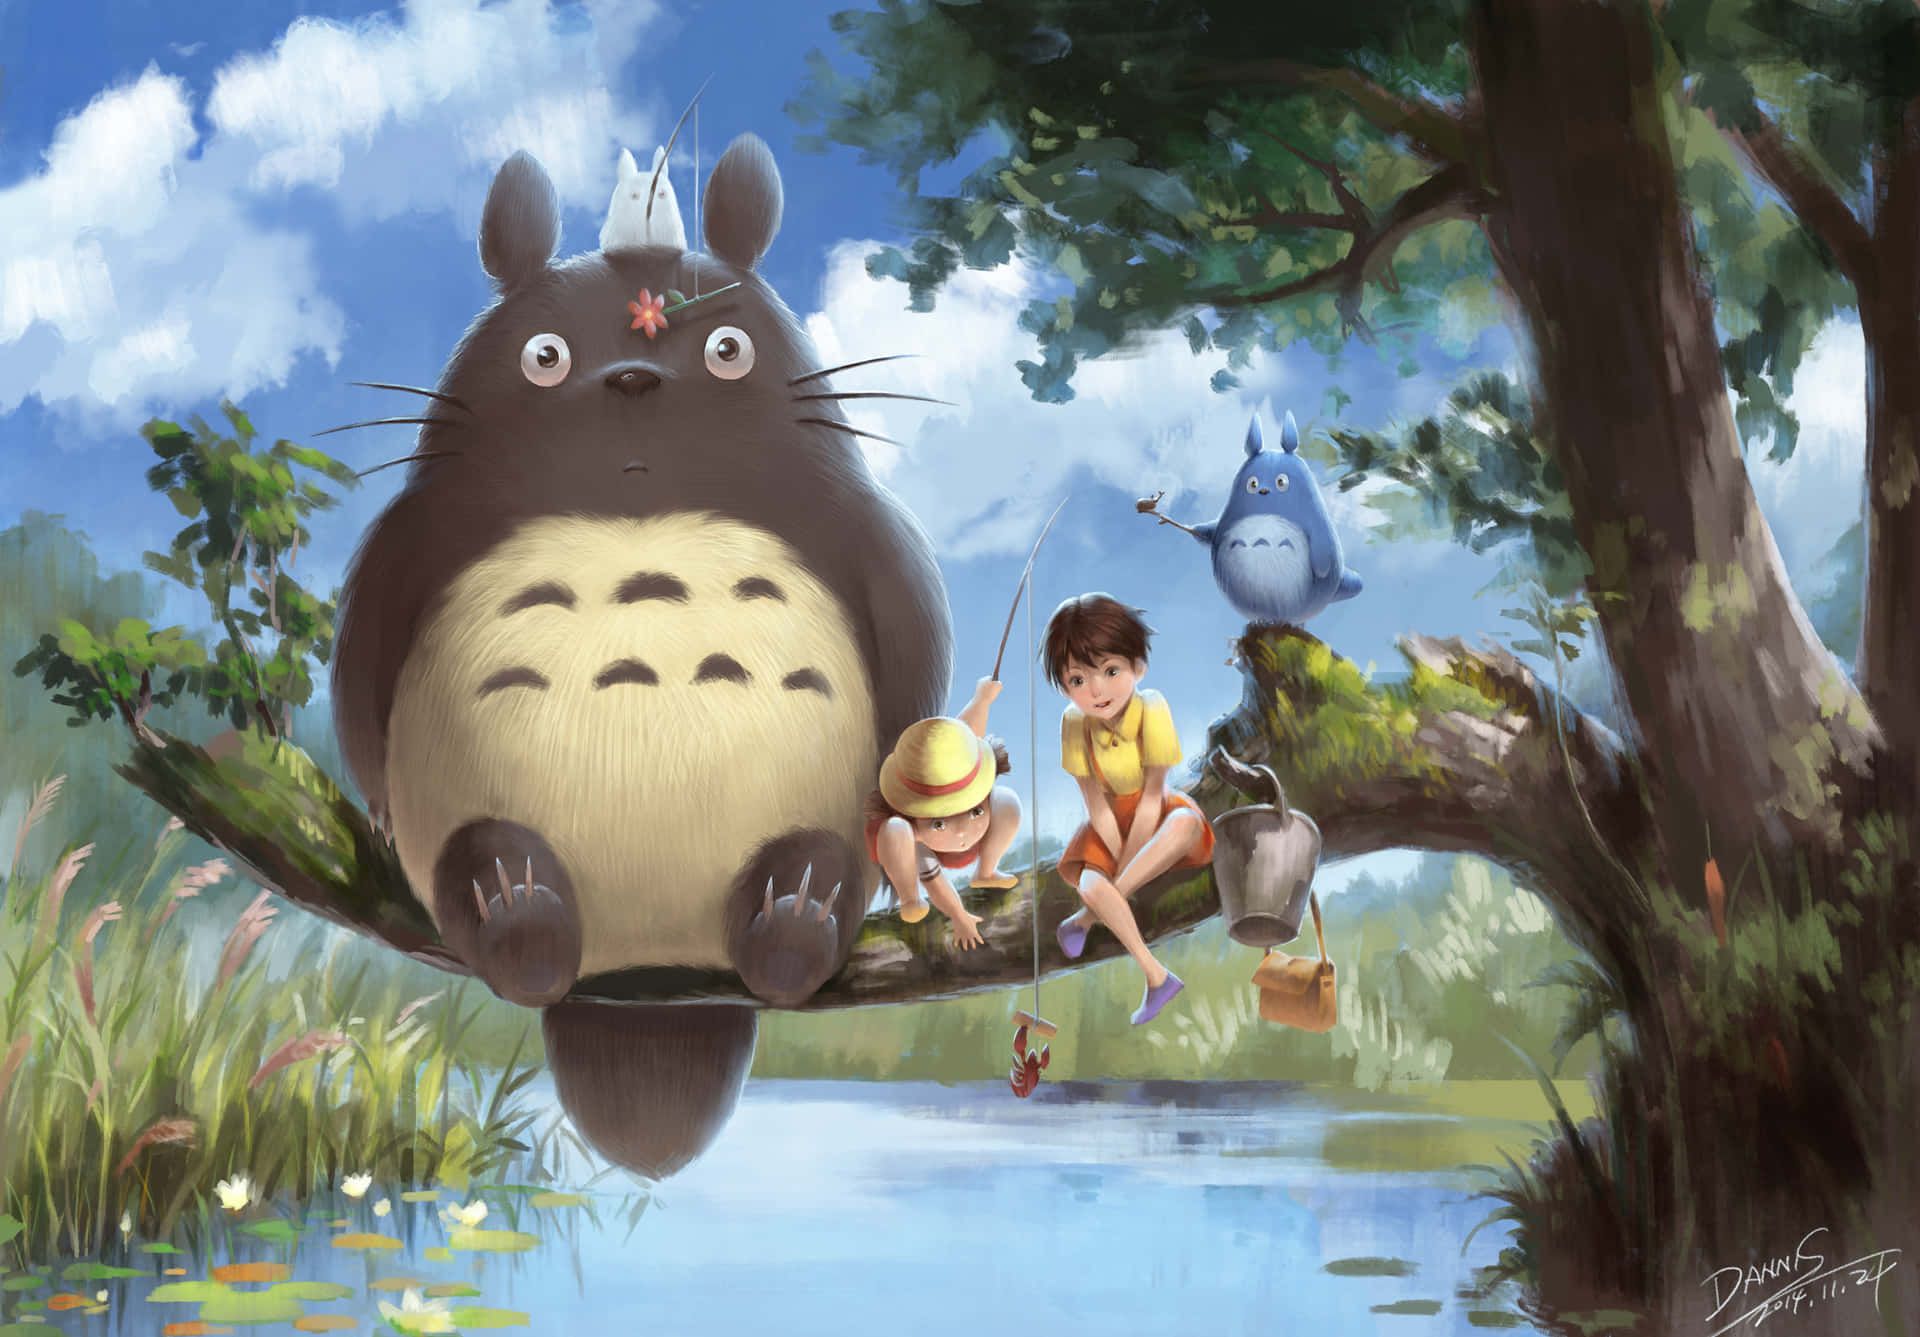 My Neighbor Totoro, 1988, directed by Hayao Miyazaki. Totoro and two children fishing on a tree branch. - My Neighbor Totoro